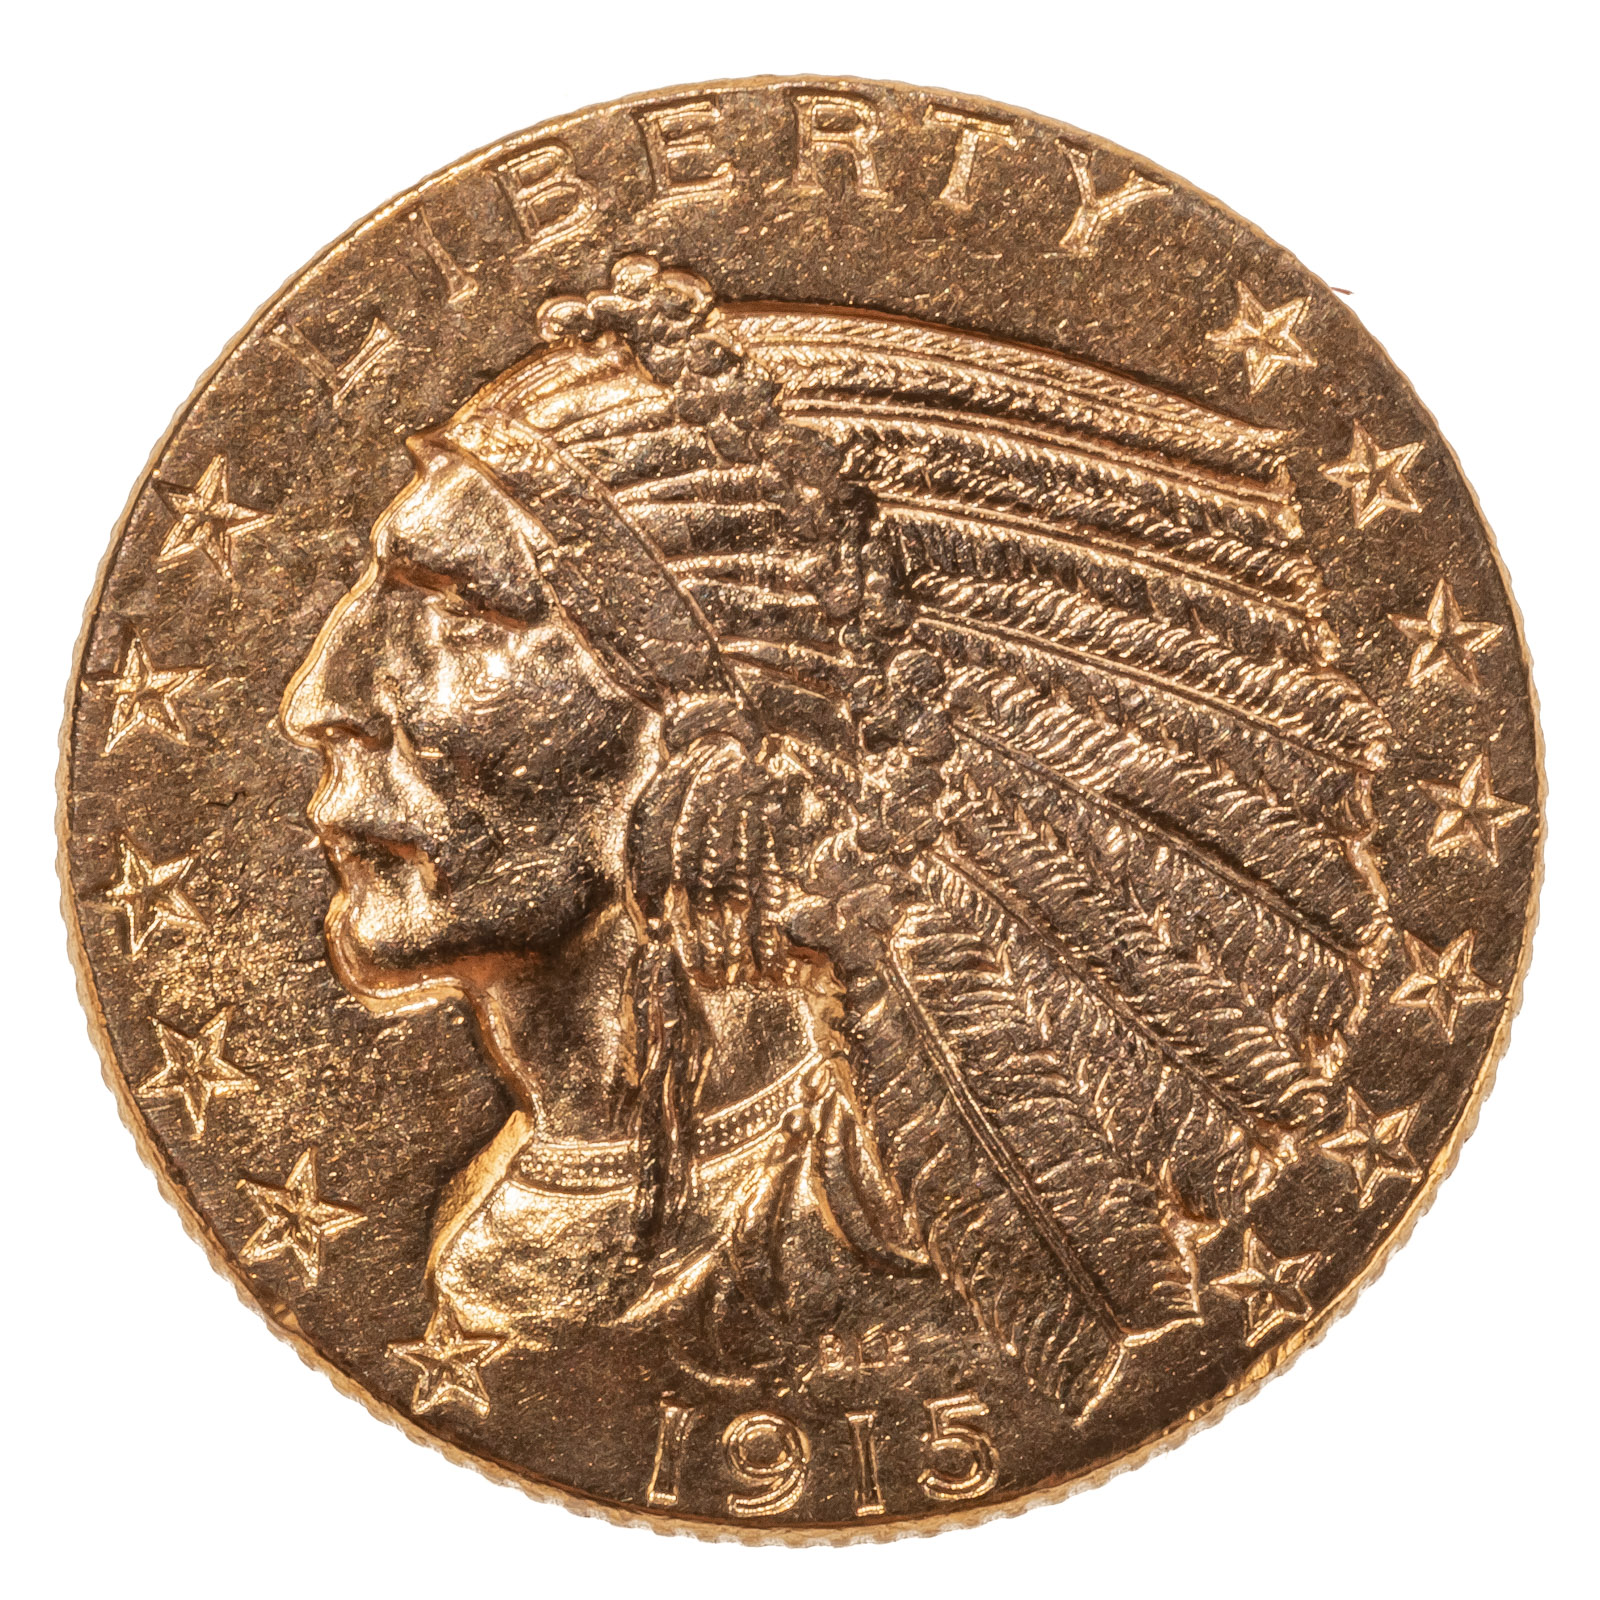 1915 5 INDIAN GOLD HALF EAGLE 2879cd